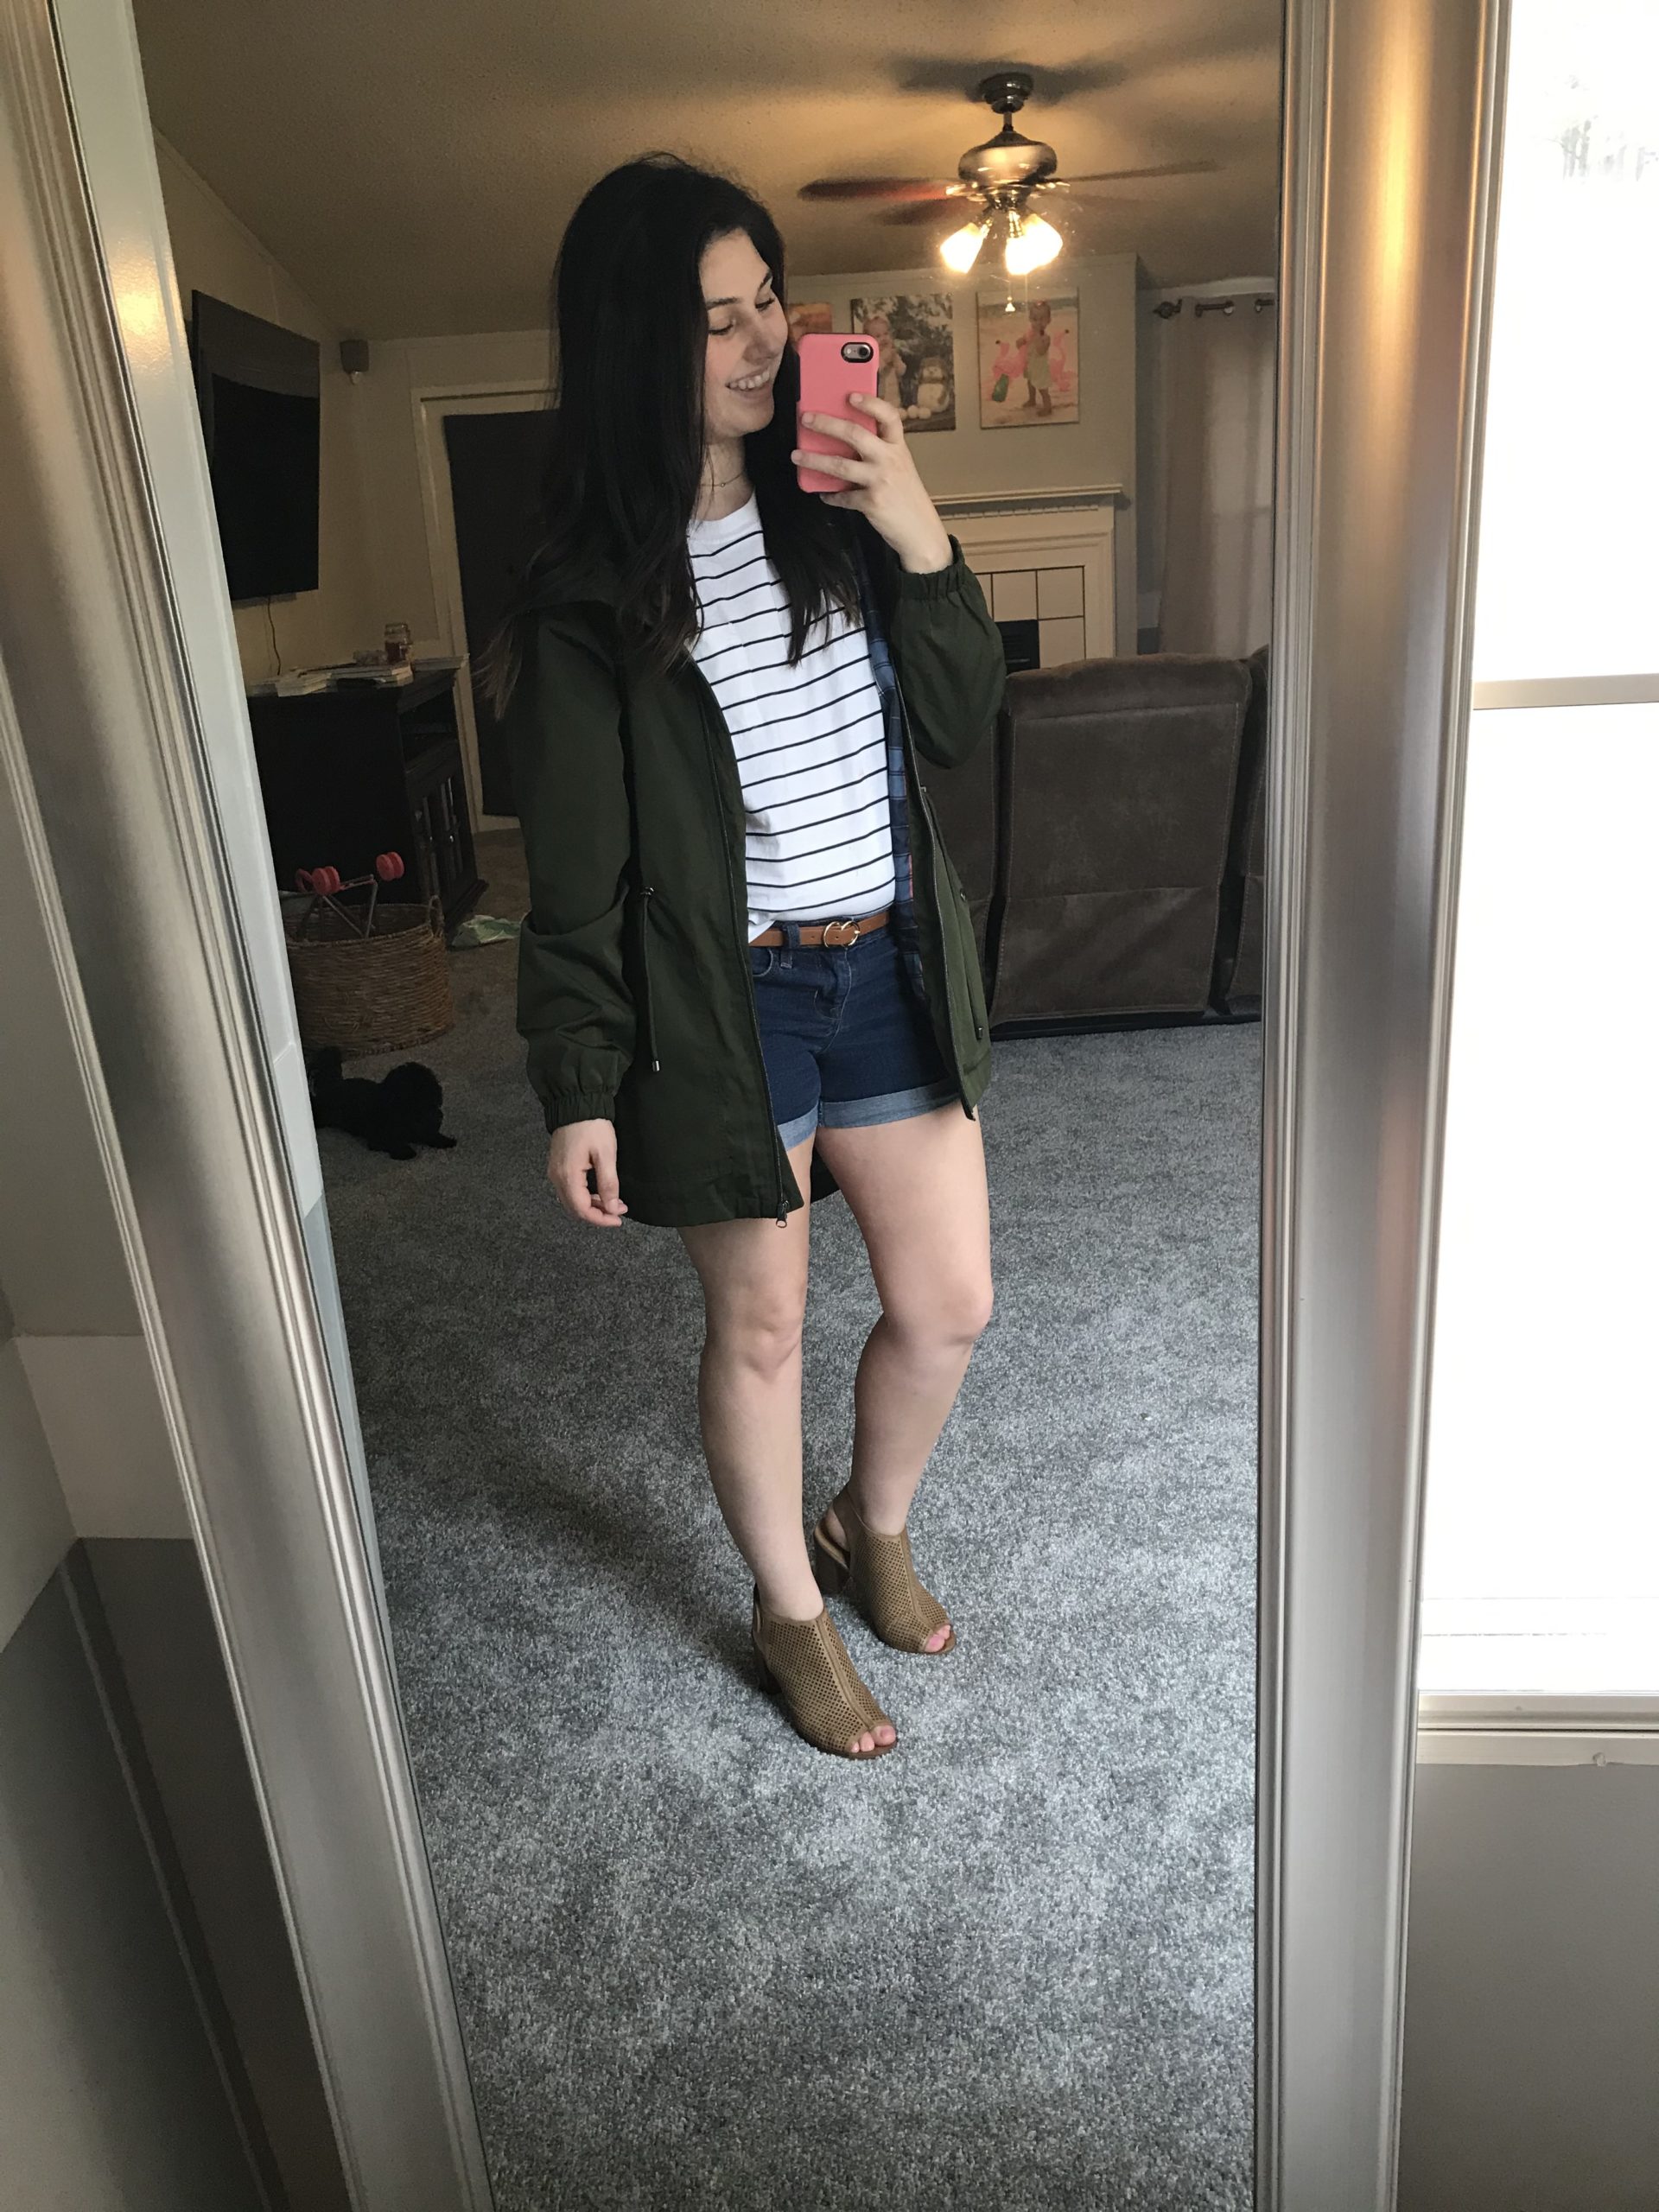 Mirror Green jacket and shorts